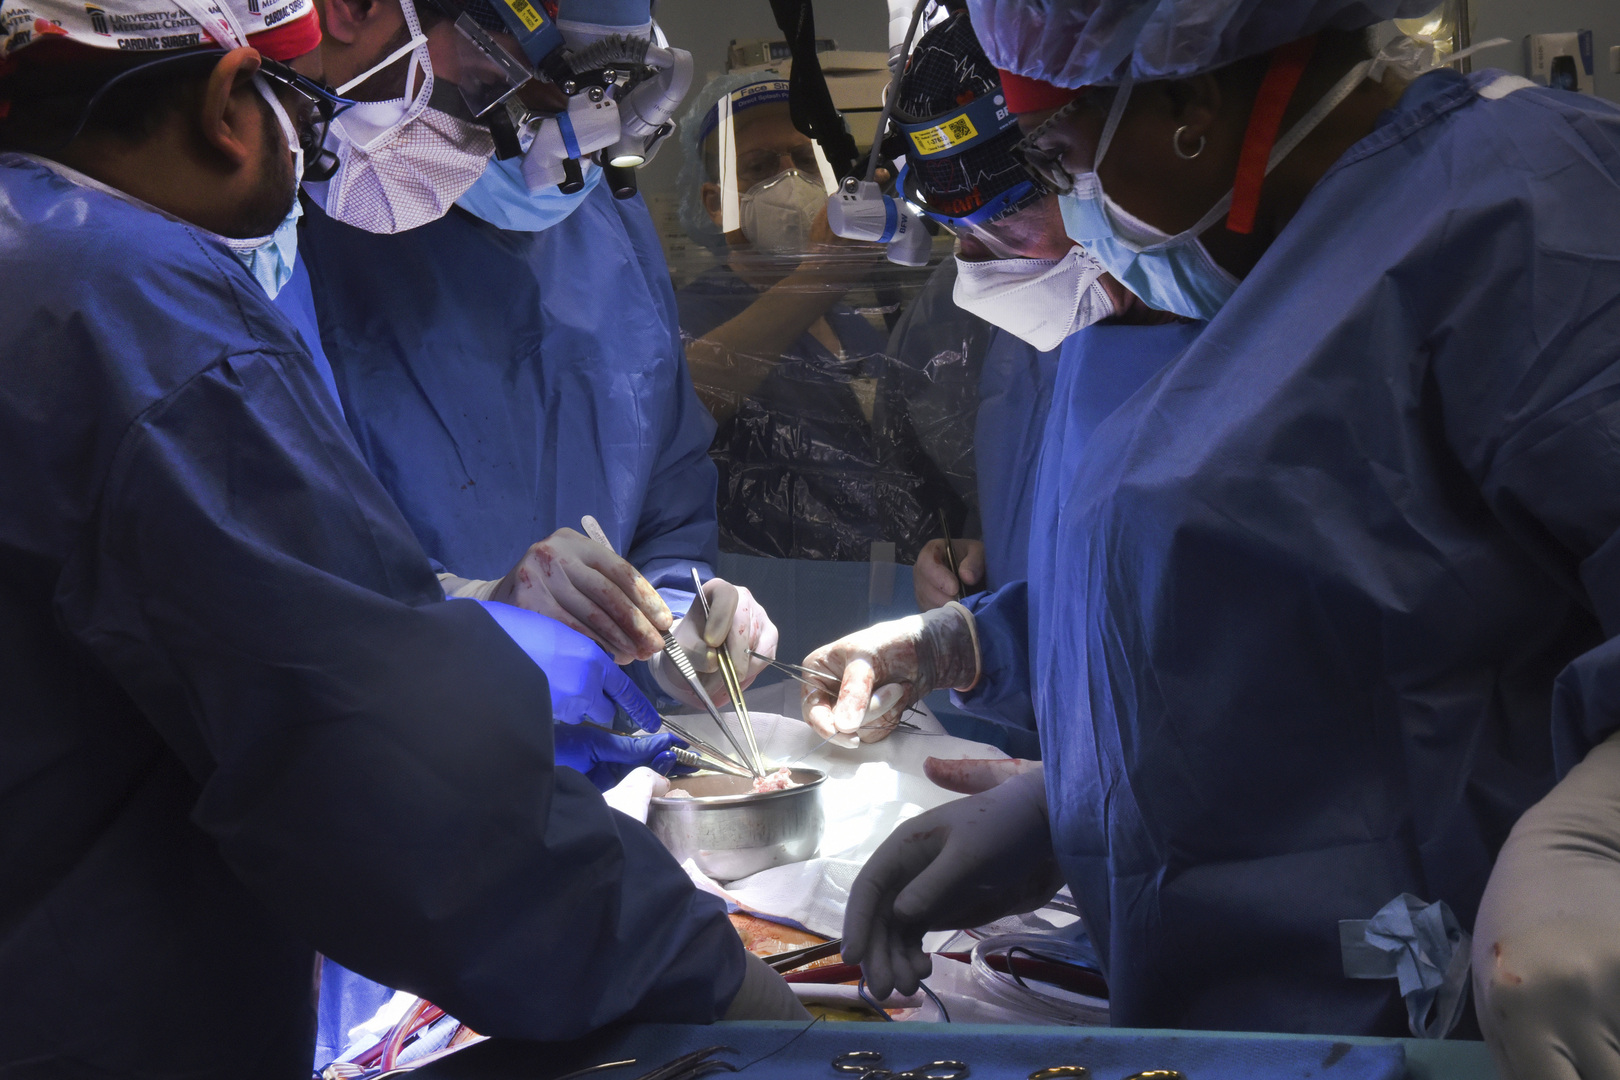 جراحون أمريكيون يزرعون بنجاح قلب خنزير في جسم إنسان في أول عملية من نوعها